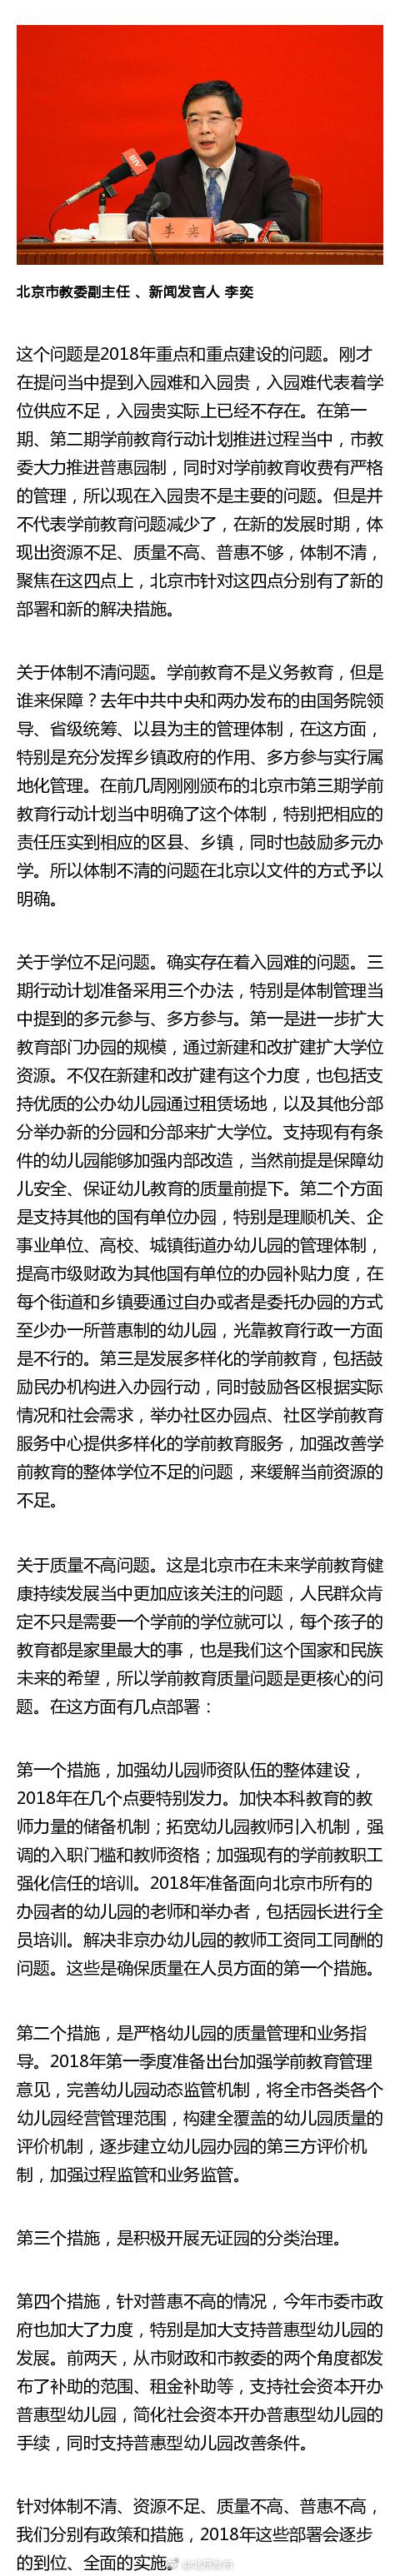 政府网站:北京教委:入园贵已不存在 将强调幼教入职门槛